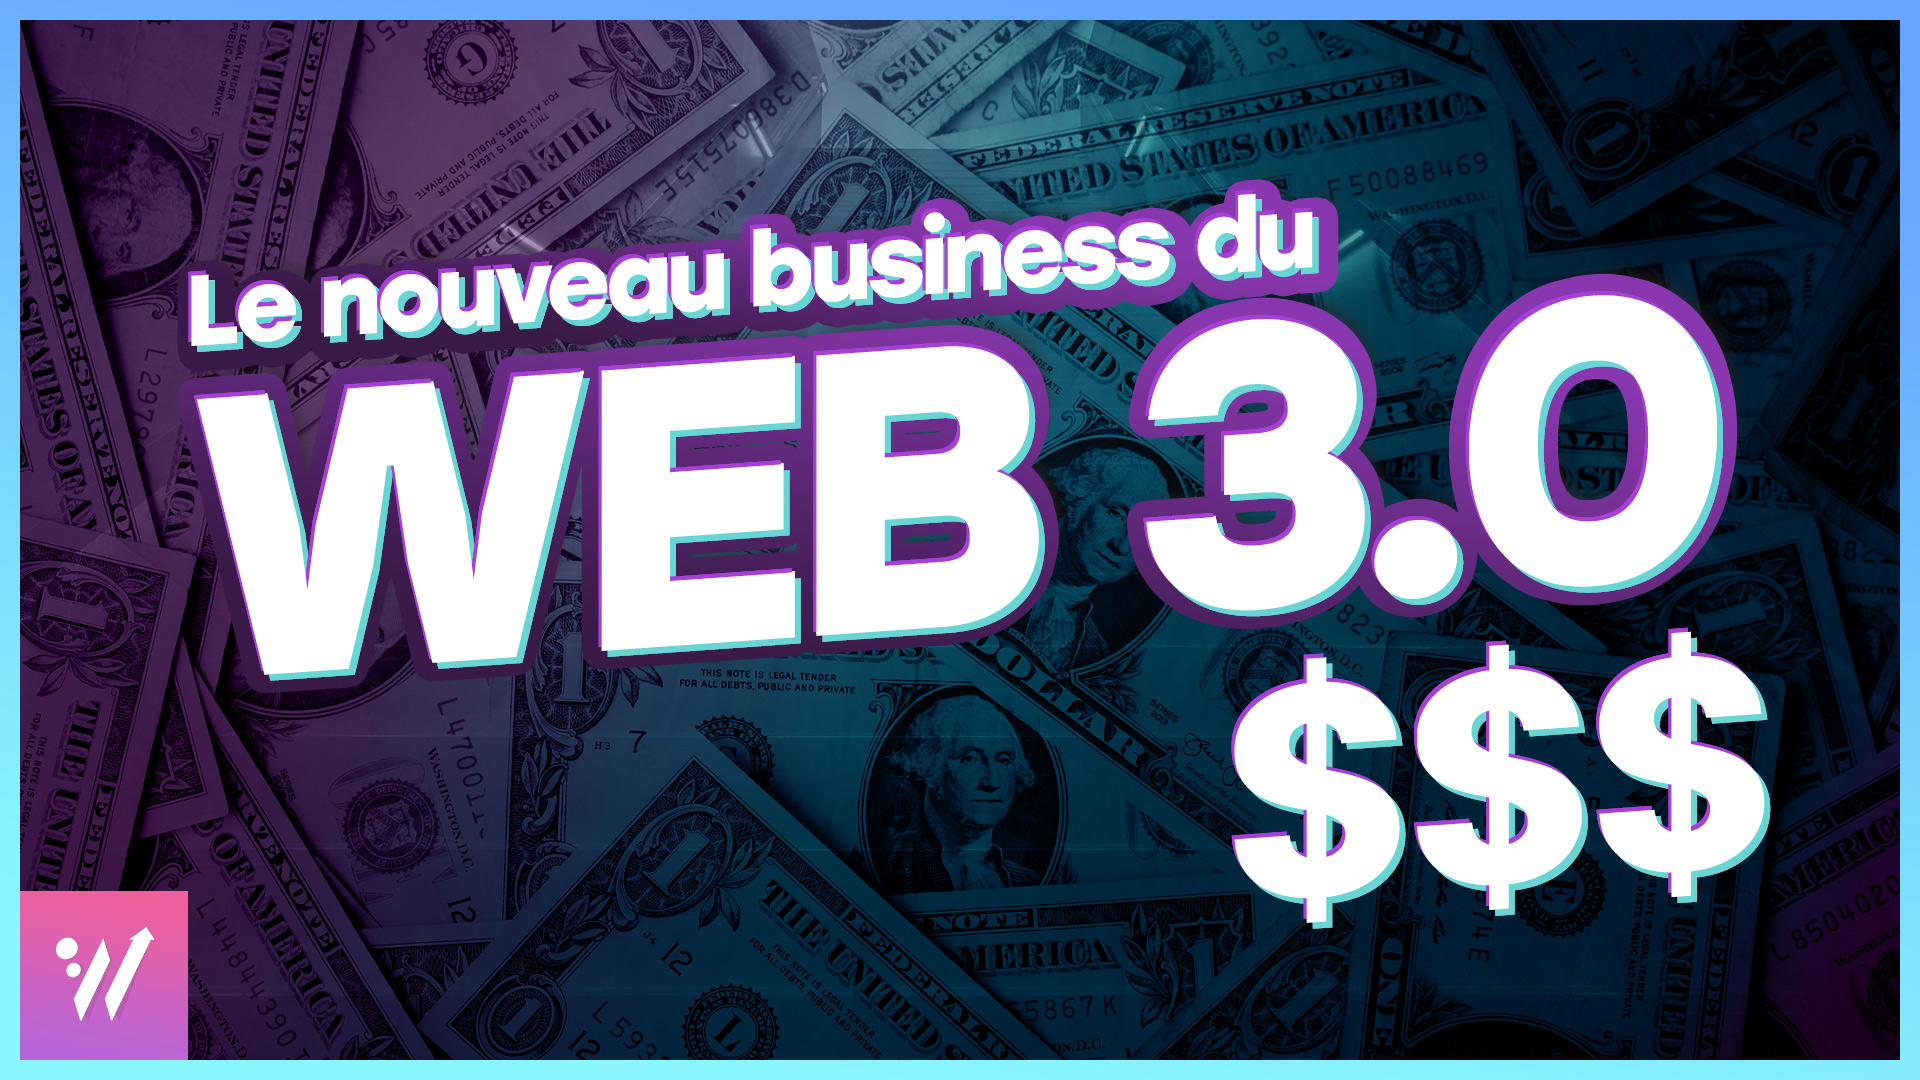 Le nouveau business du web 3.0 - Image de couverture